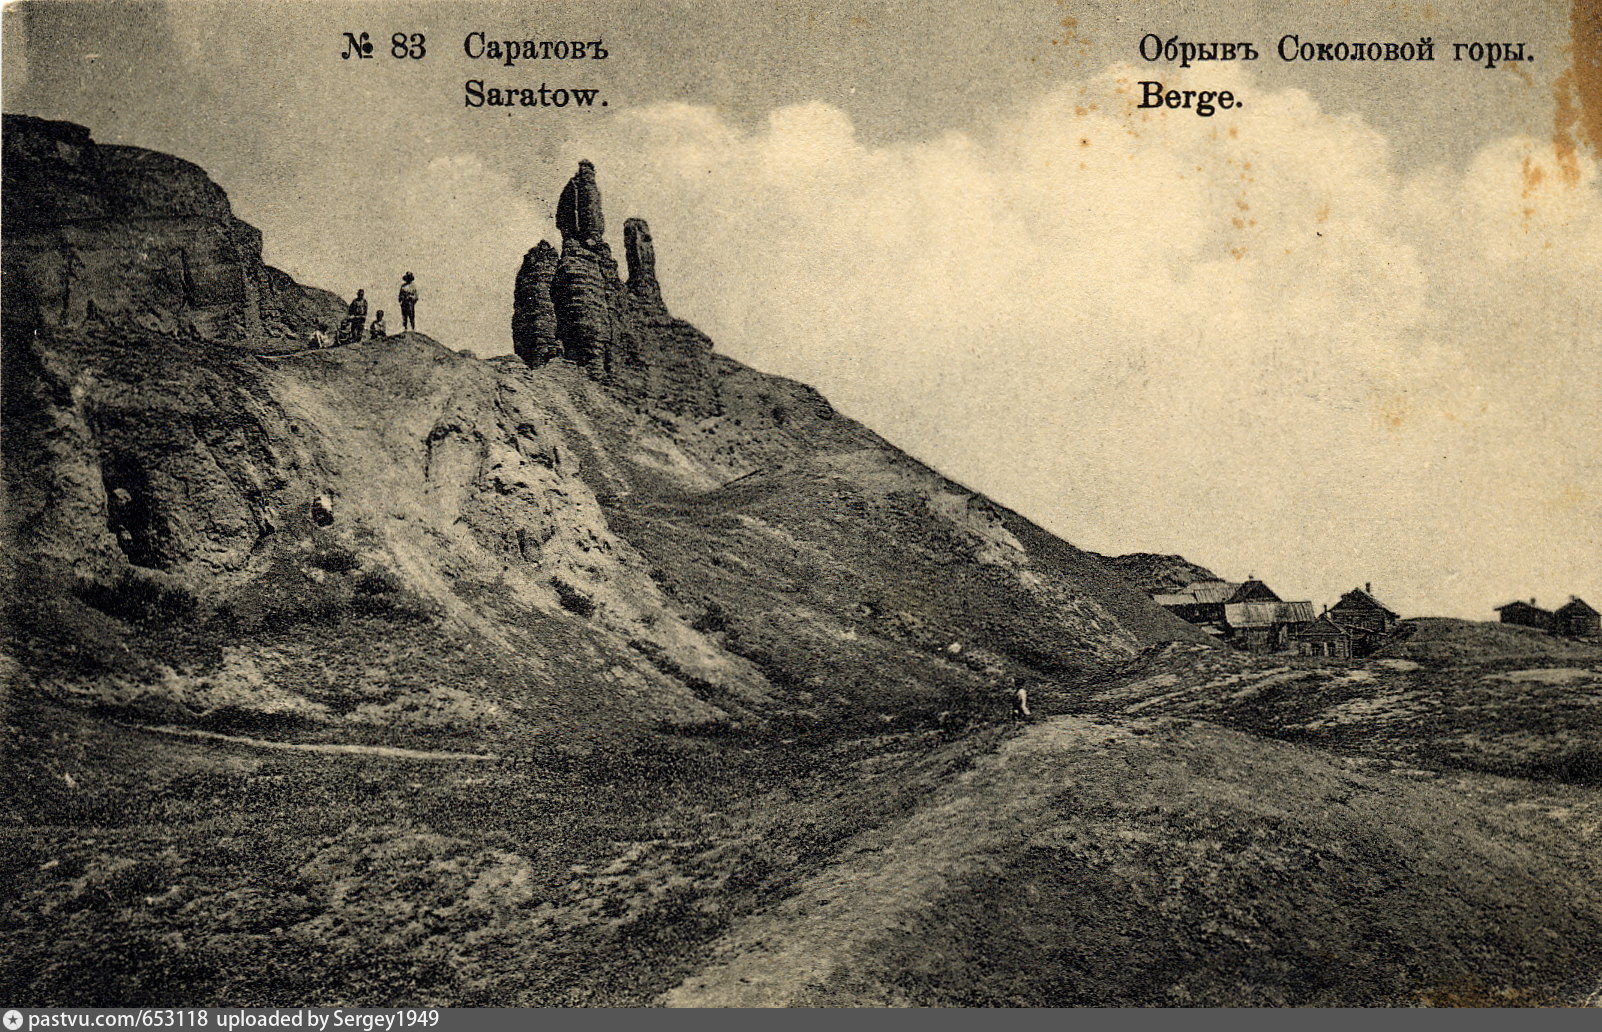 фото соколовой горы саратов